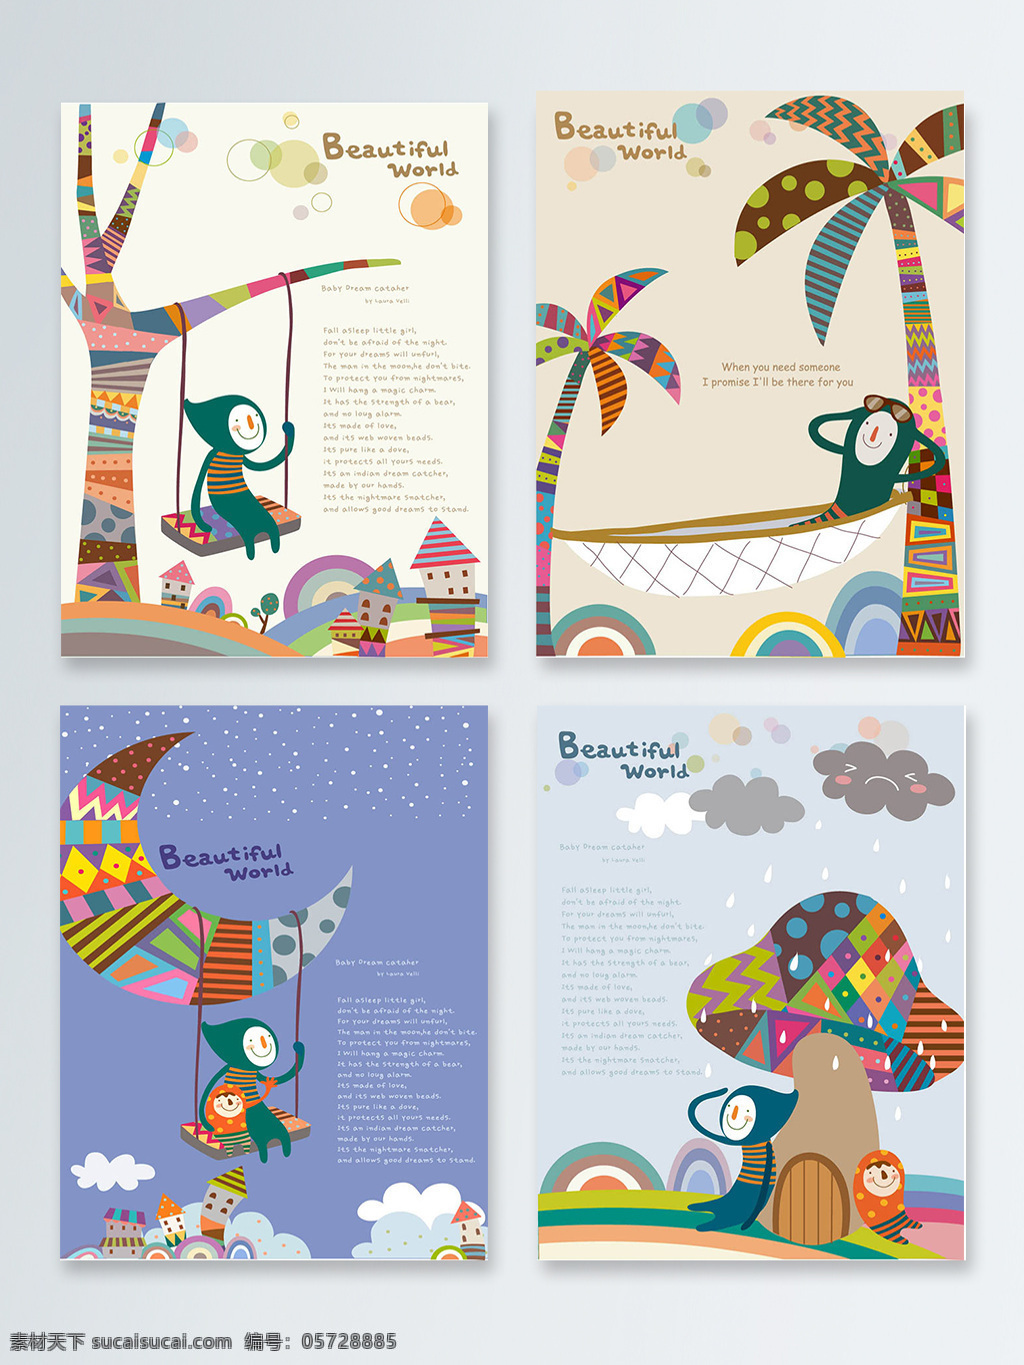 创意 可爱 儿童 插画 背景 图 扁平化 彩色蘑菇 彩色树 海报背景图 秋千